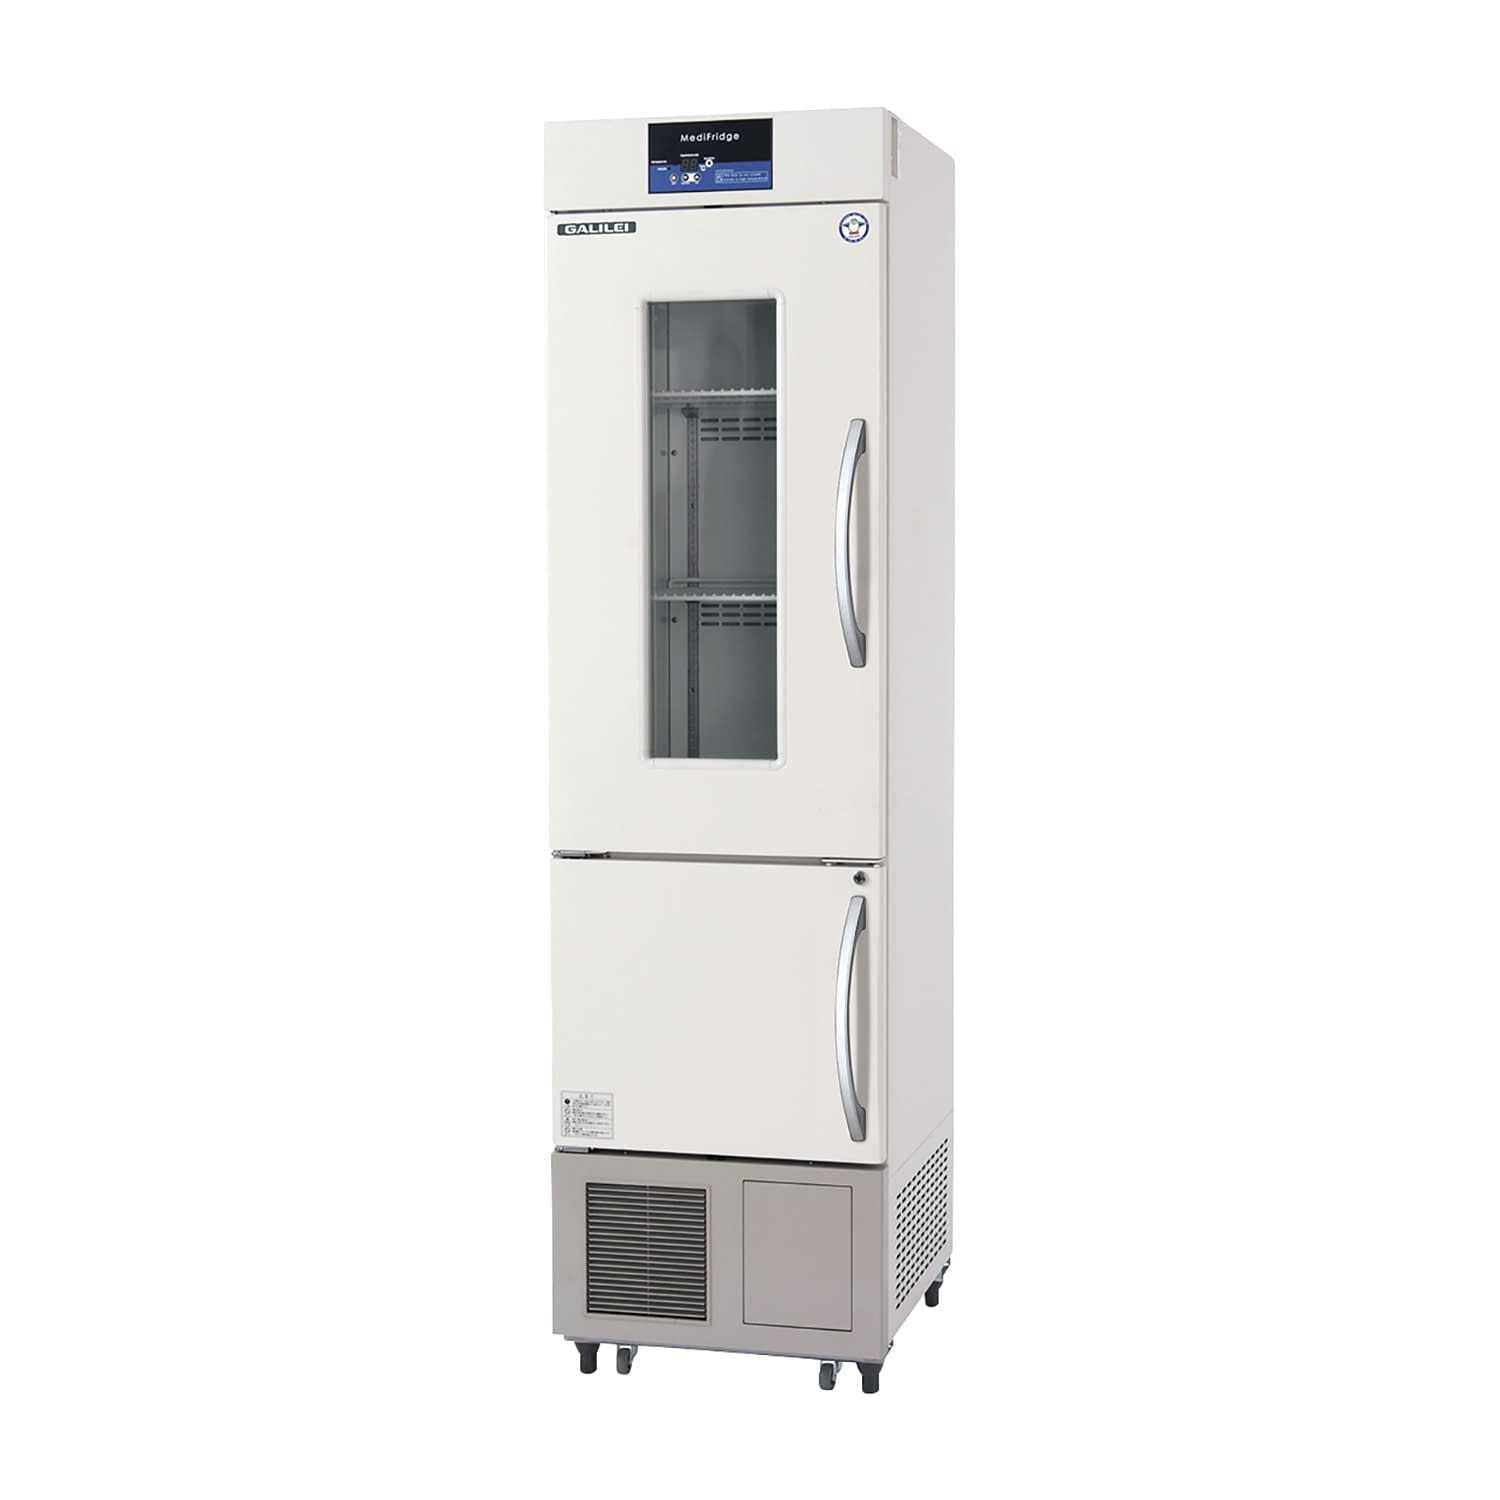 薬用冷凍冷蔵庫 FMS-F405GX(176／481L) 1台 フクシマガリレイ アイボリー(標準色) カラースカイブルー25-5515-0207 保冷庫 検査室 薬用保冷庫